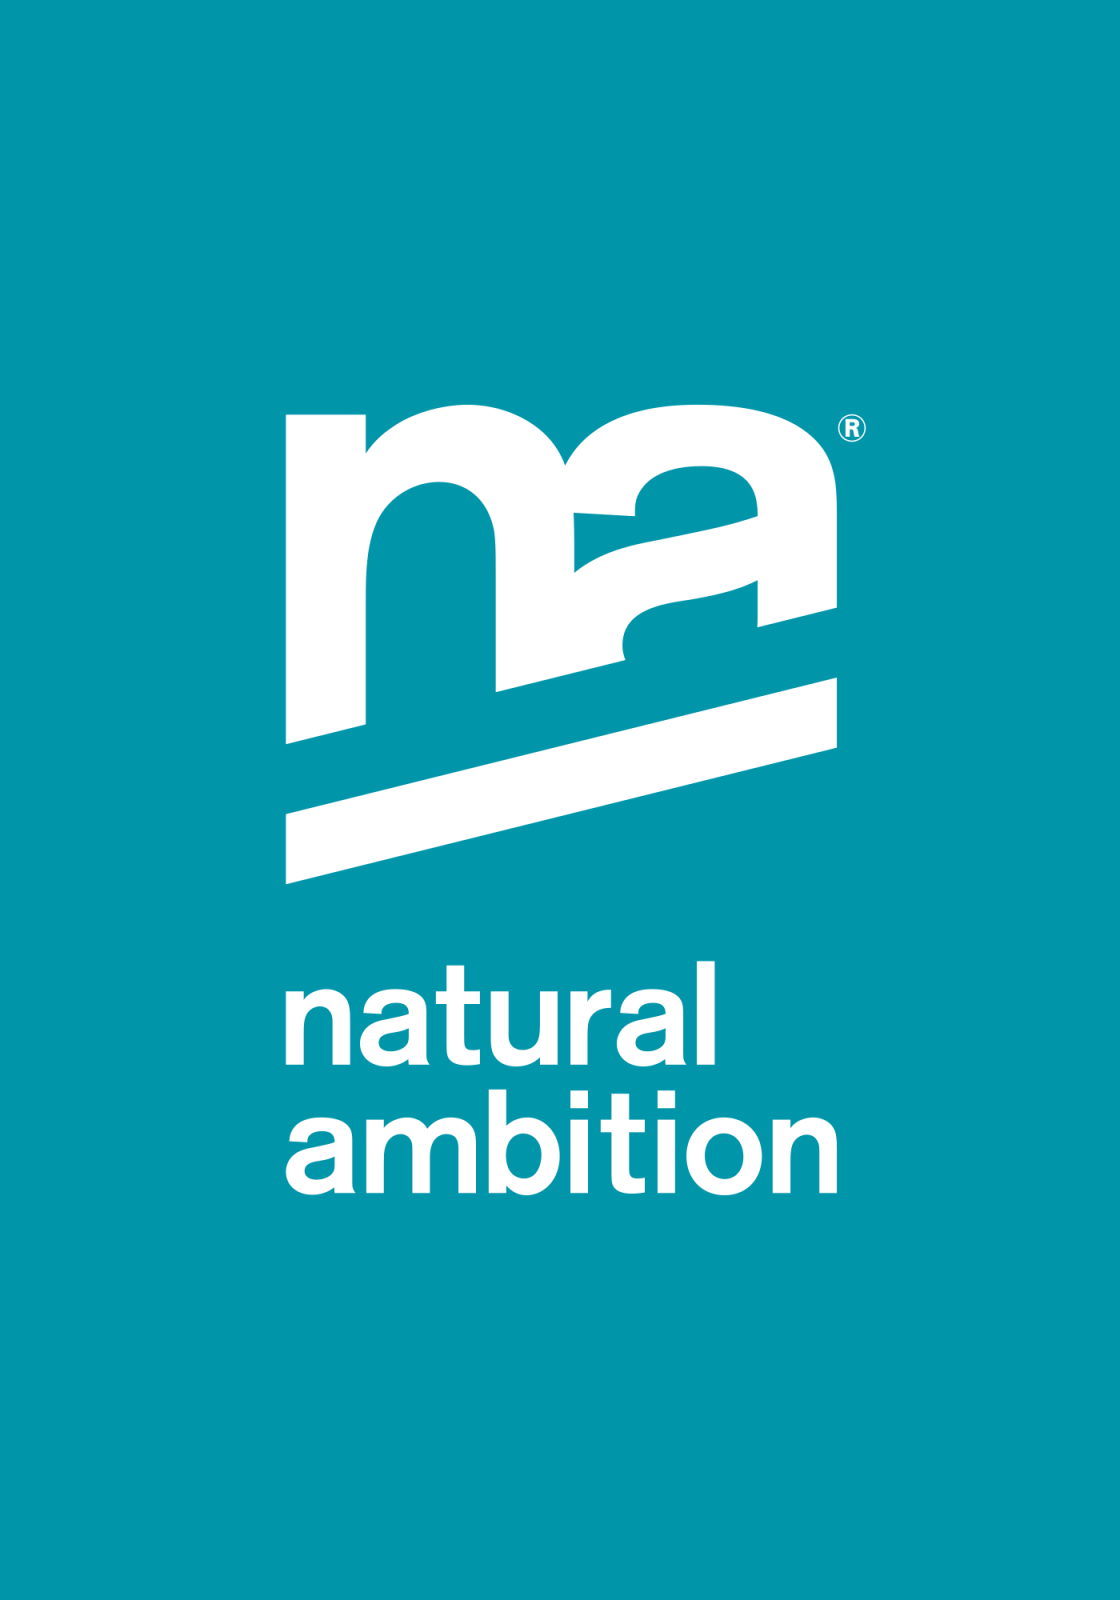 Natural Ambition logo